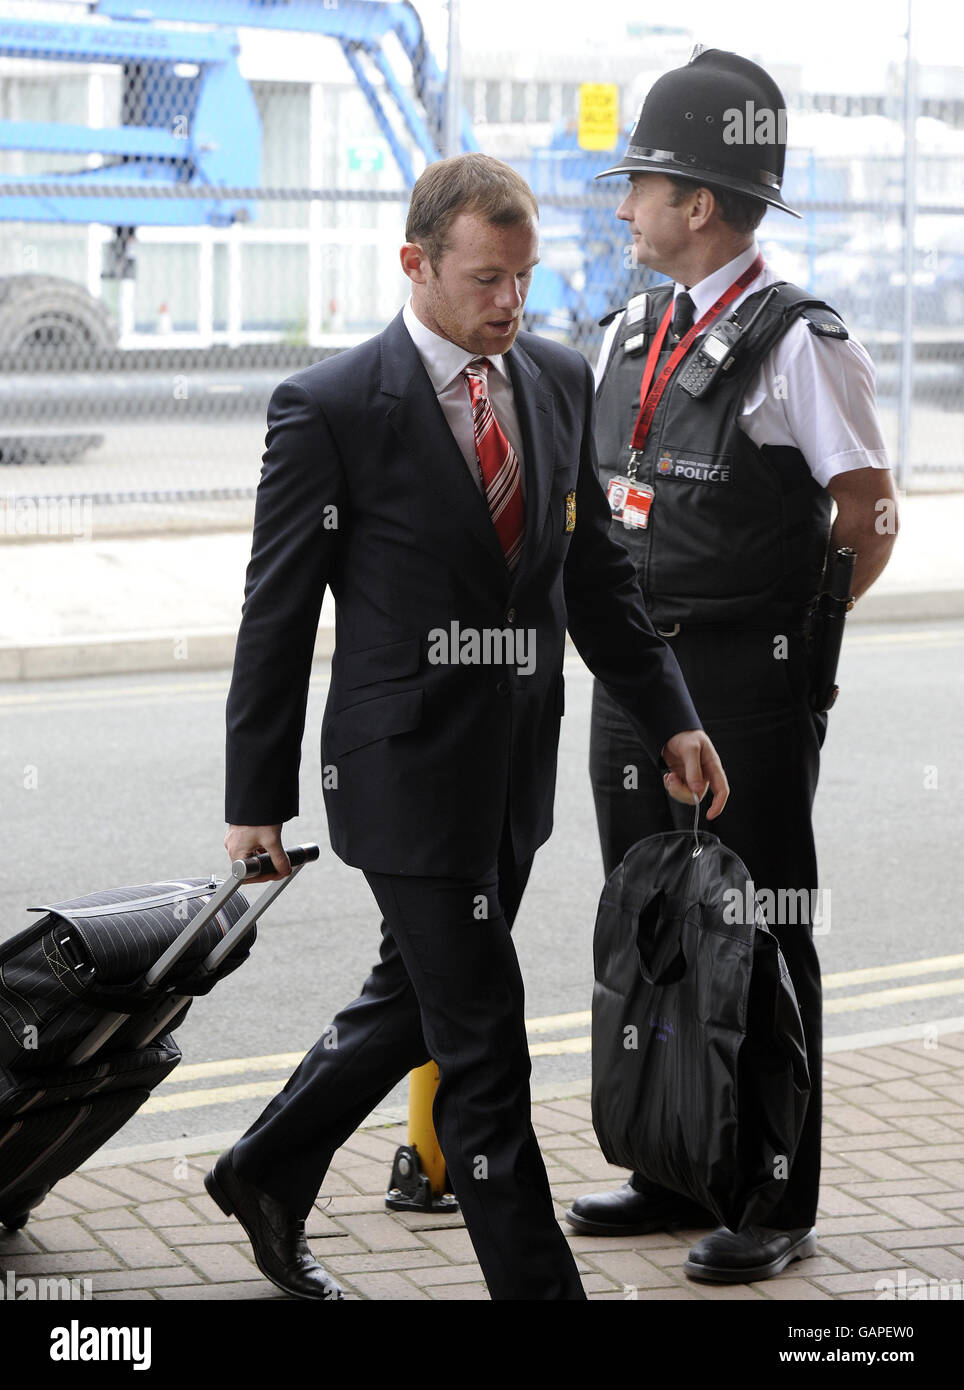 Wayne Rooney, de Manchester United, arrive à l'aéroport de Manchester, à Manchester. Banque D'Images